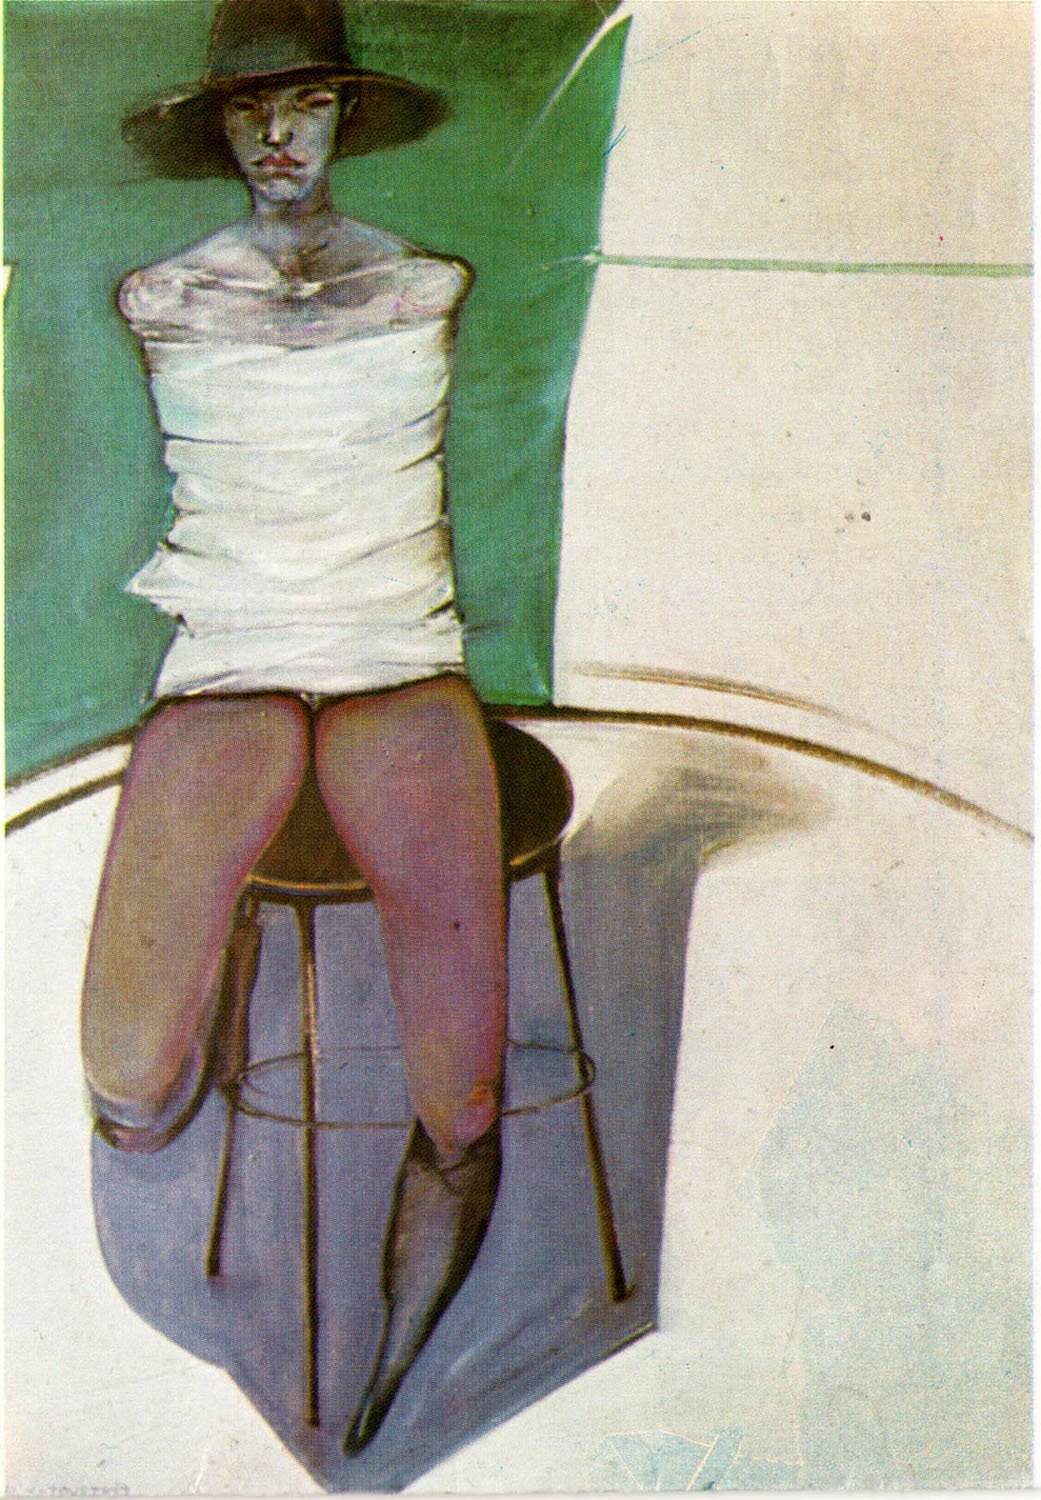 A keresett képek egyike: El Kazovszkij: A tárgy II. Olaj, farost, 80≈100 cm, 1977